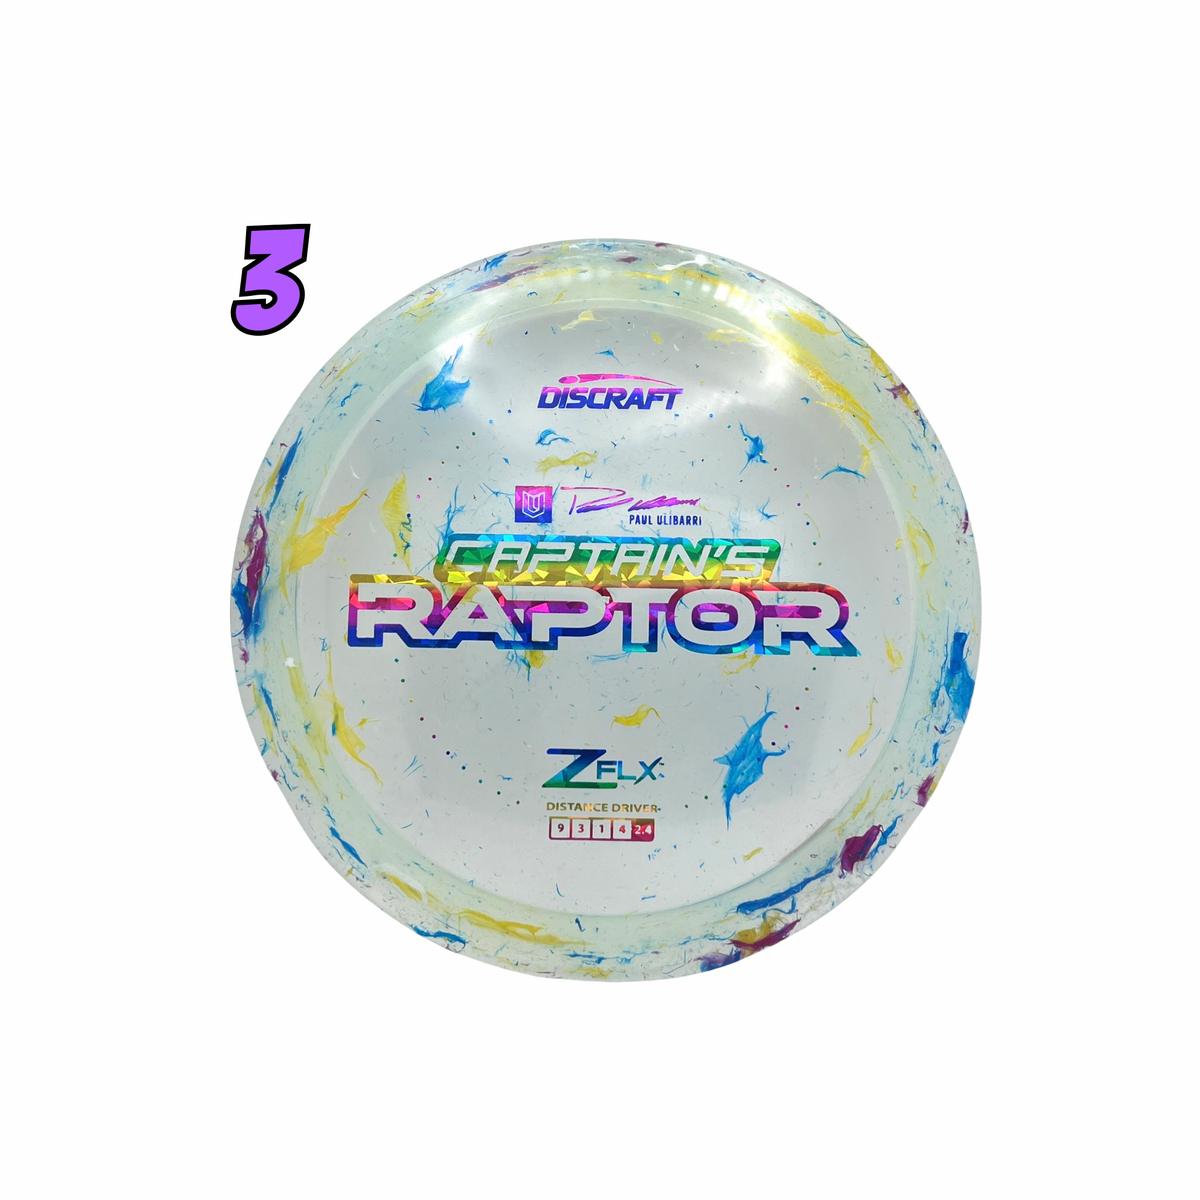 Jawbreaker Z Flx Captain’s Raptor